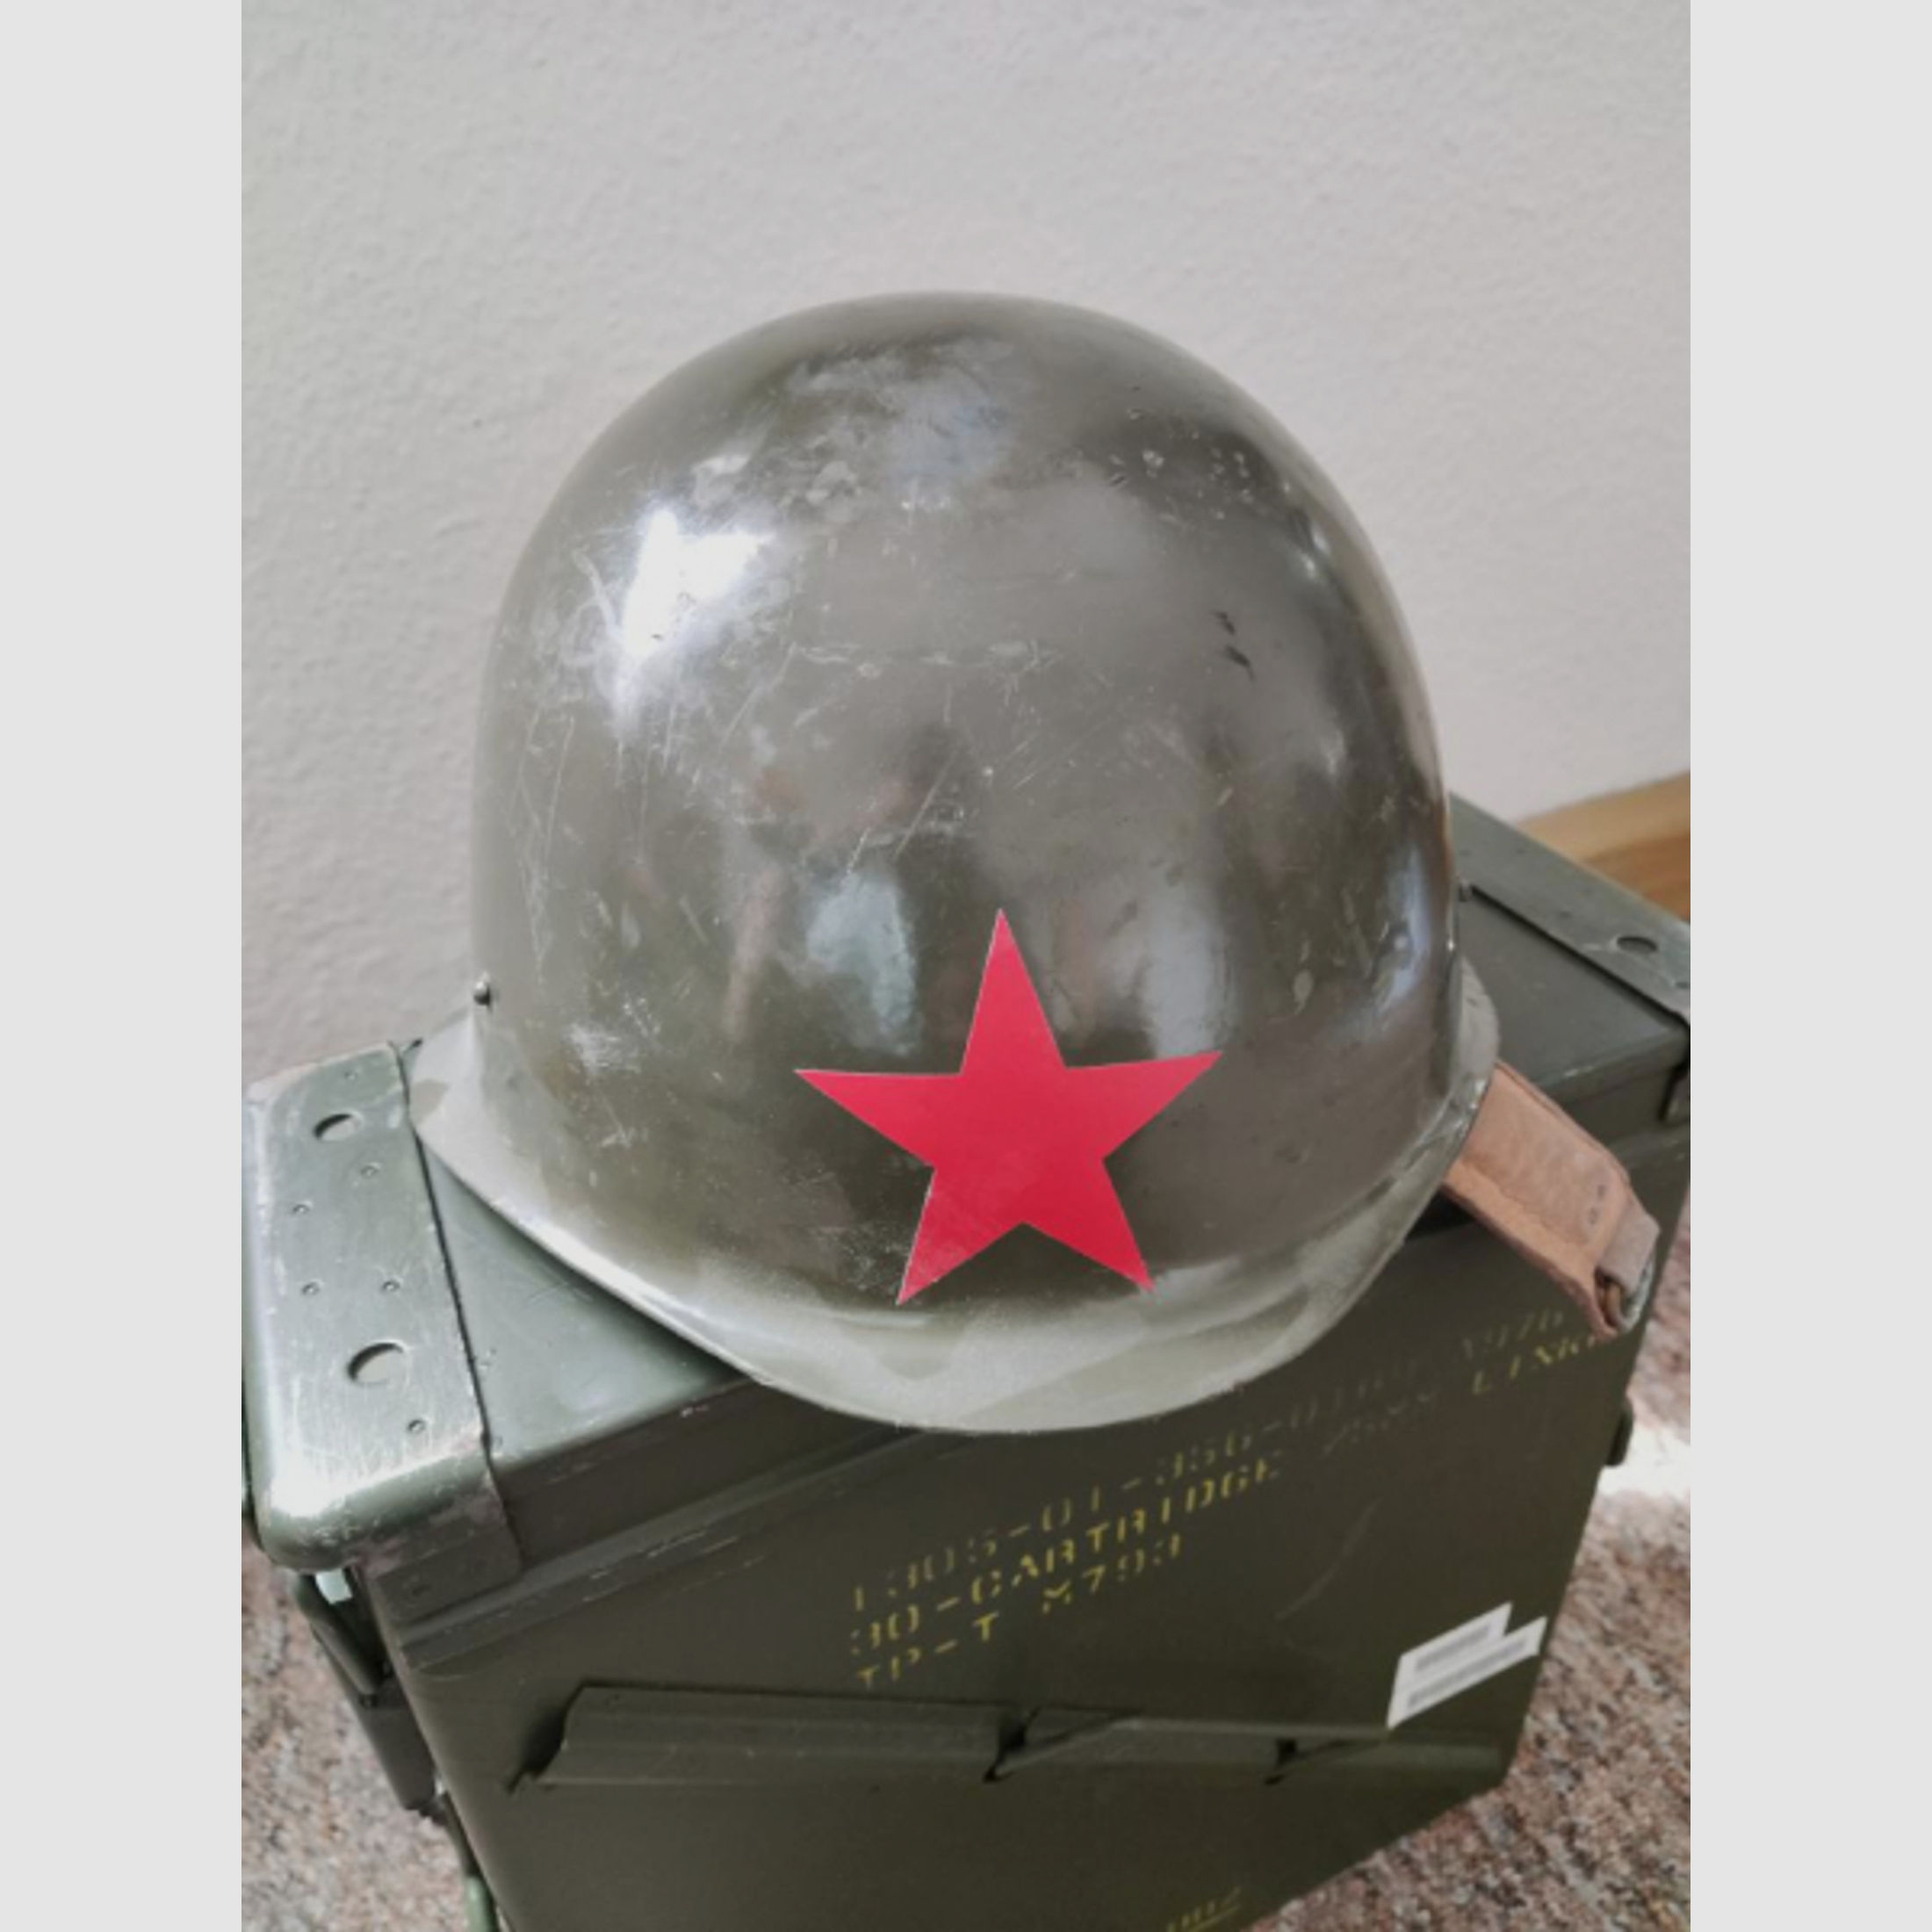 Unbekannter Stahlhelm Roter Stern Warschauer Pakt Sowjetunion DDR NVA